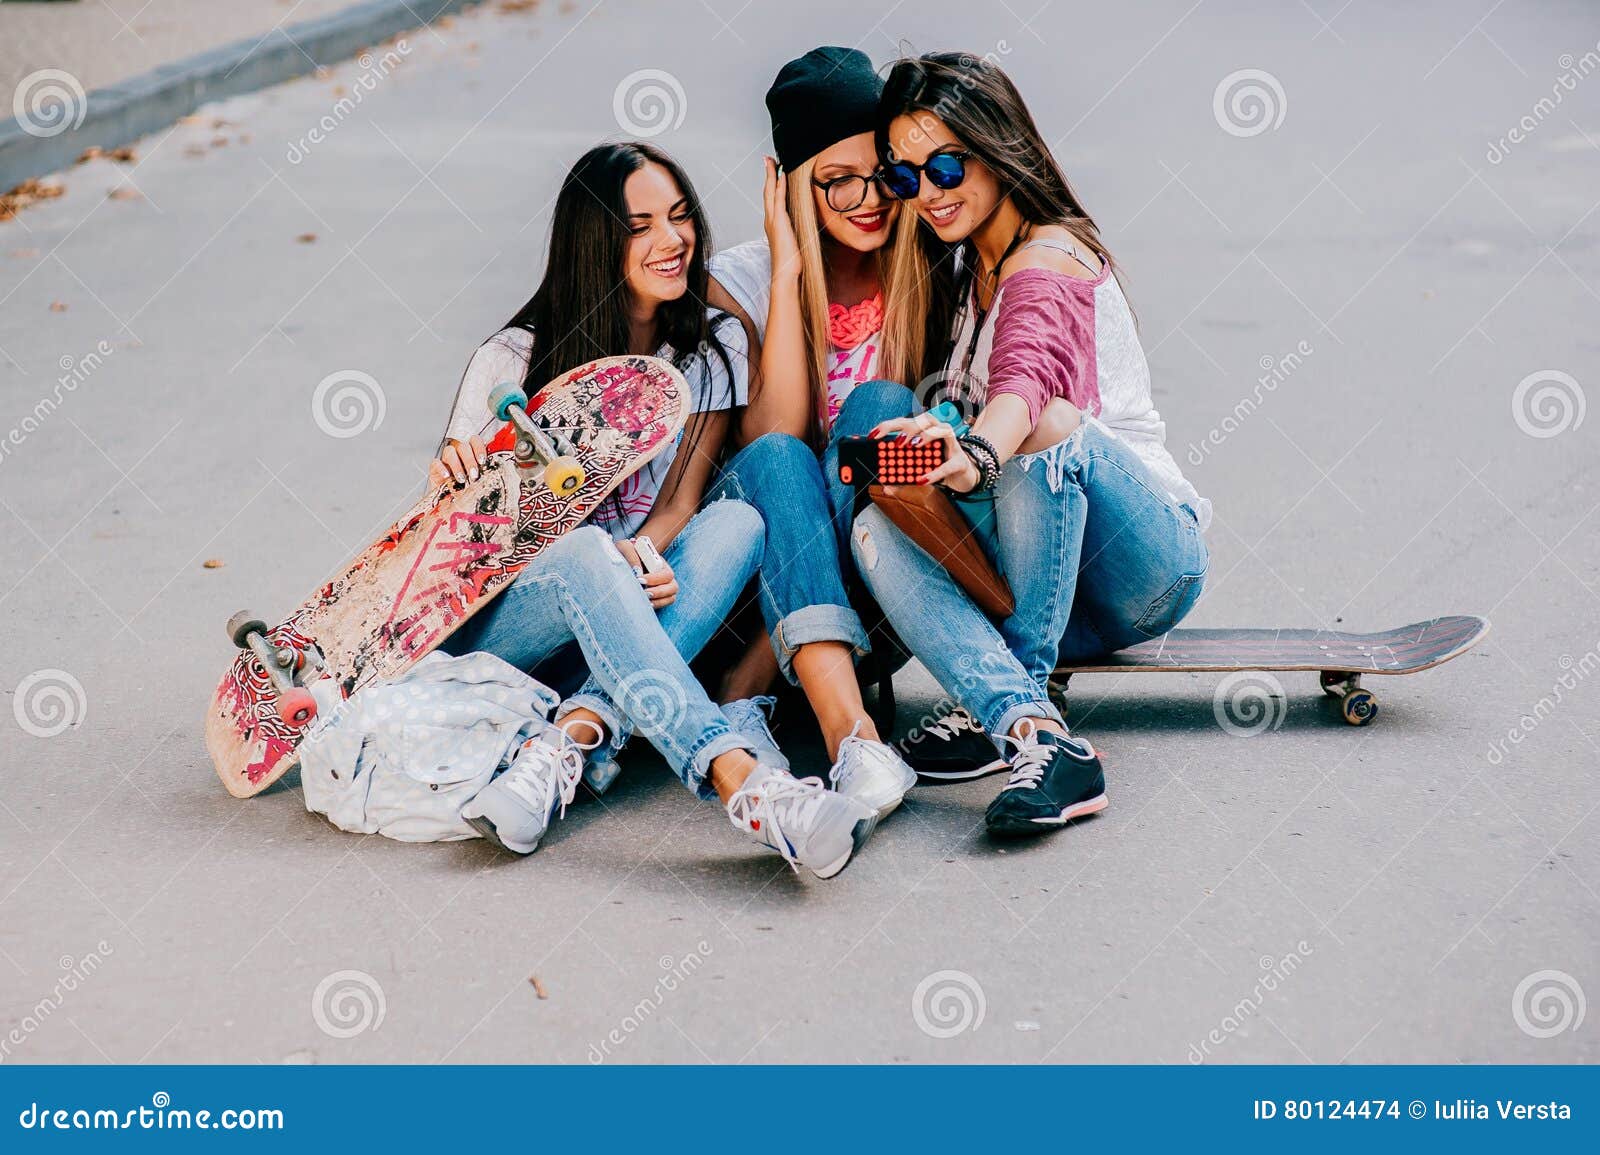 Жизнь с тремя подружками. Фото на обои для девочек 3 подруги современную. Подруги 3 сидят дома играются. Сценка для 3 подруг лëгкая. Девушки 3 подружки посередине брюнетка с короткой стрижкой.